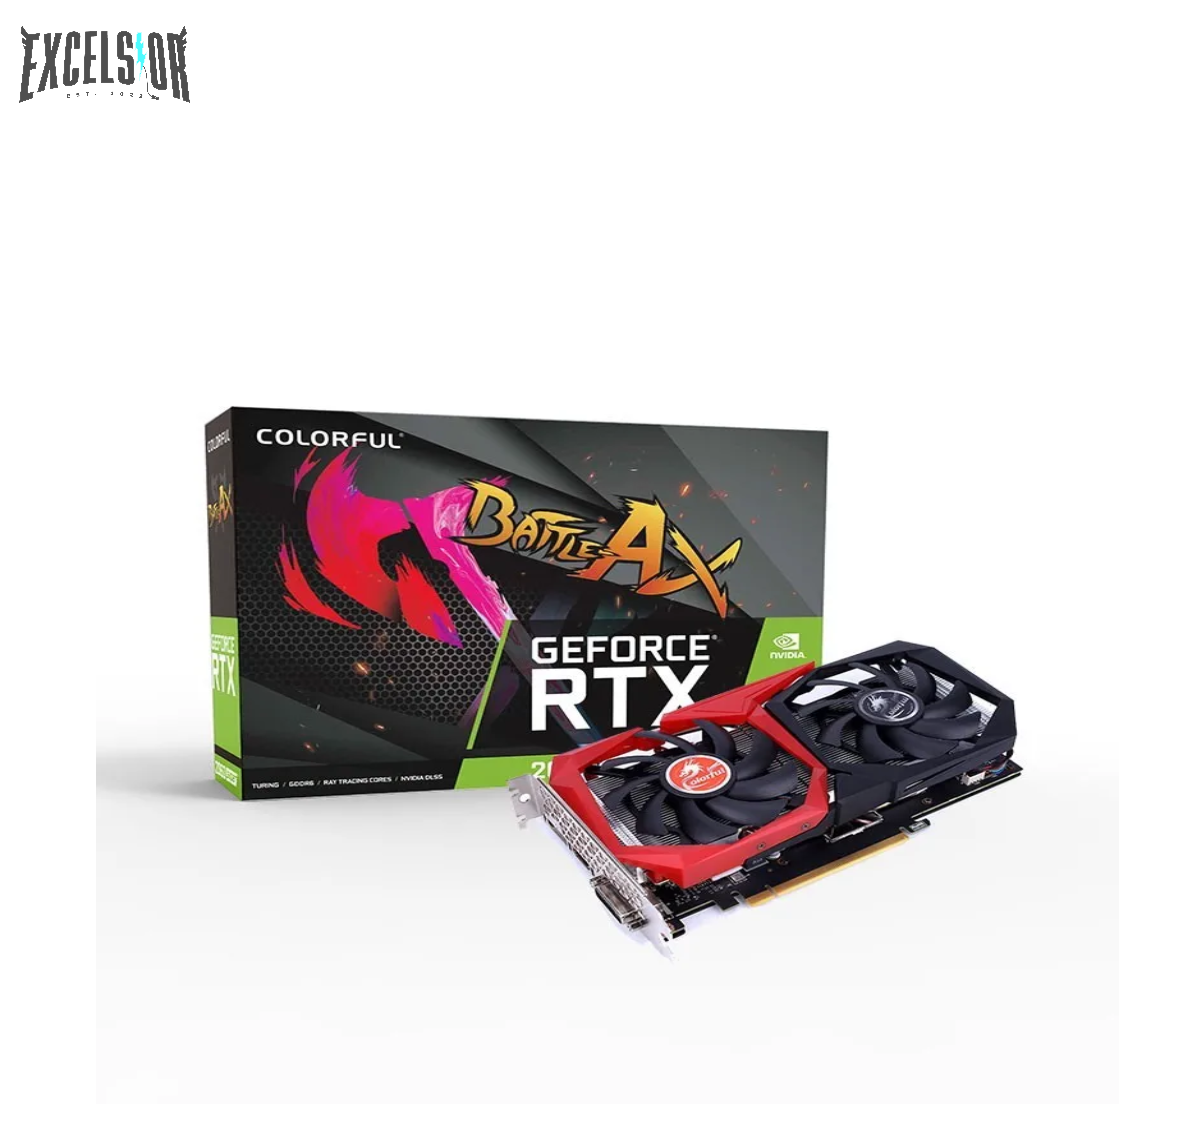 Colorful	GeForce RTX 2060 Super NB 8G-V